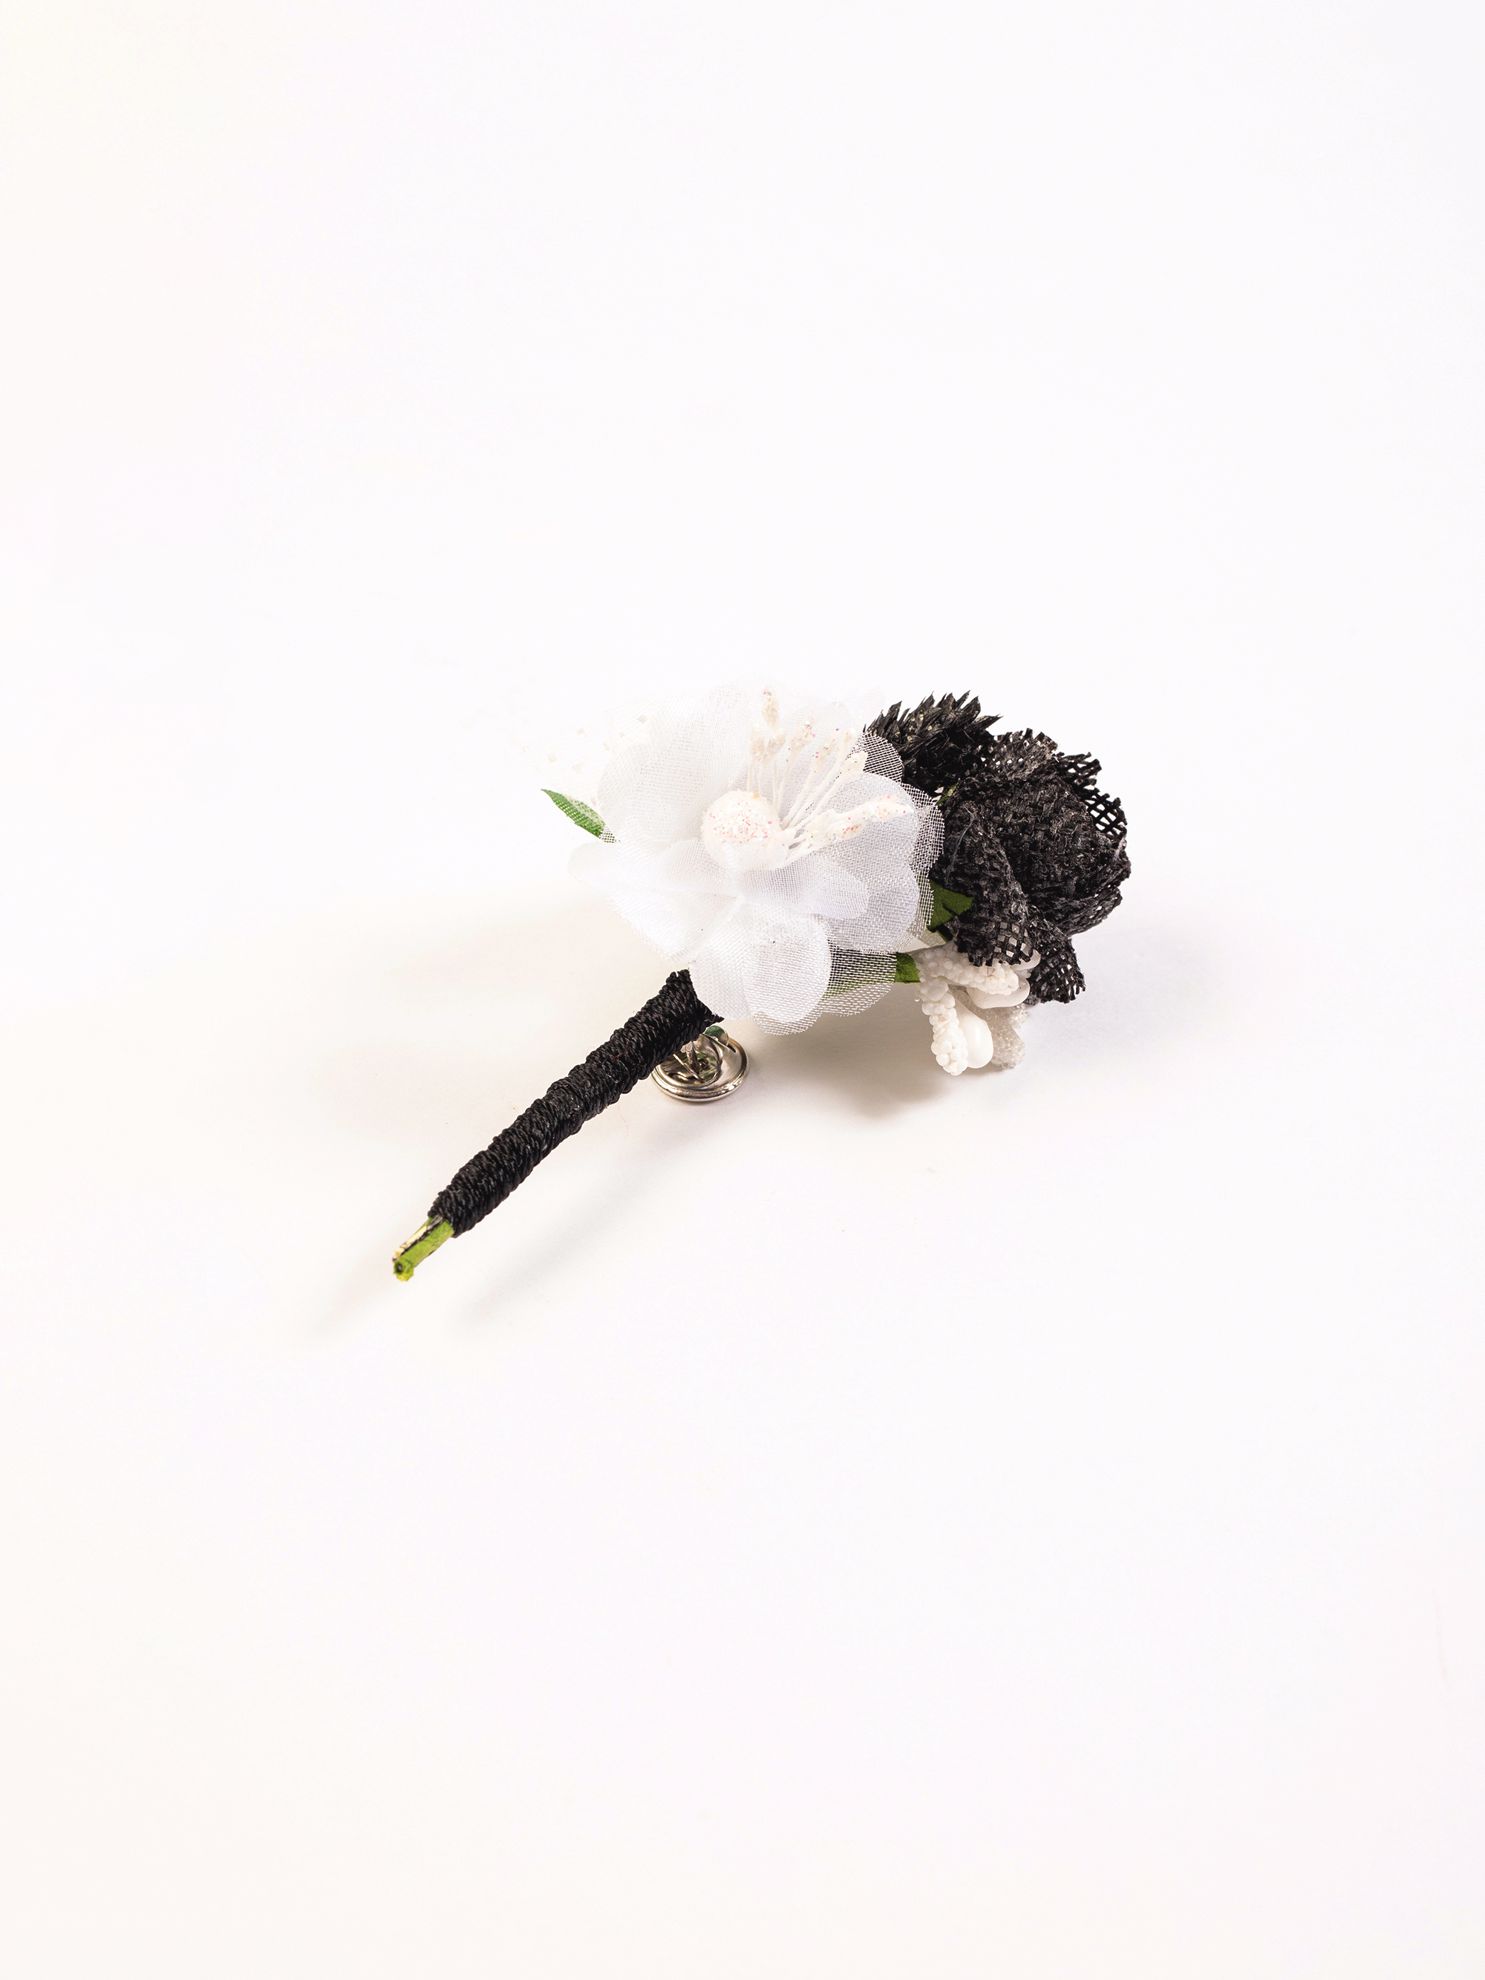 Karaca Erkek Yaka Çiçeği-Siyah - Beyaz. ürün görseli